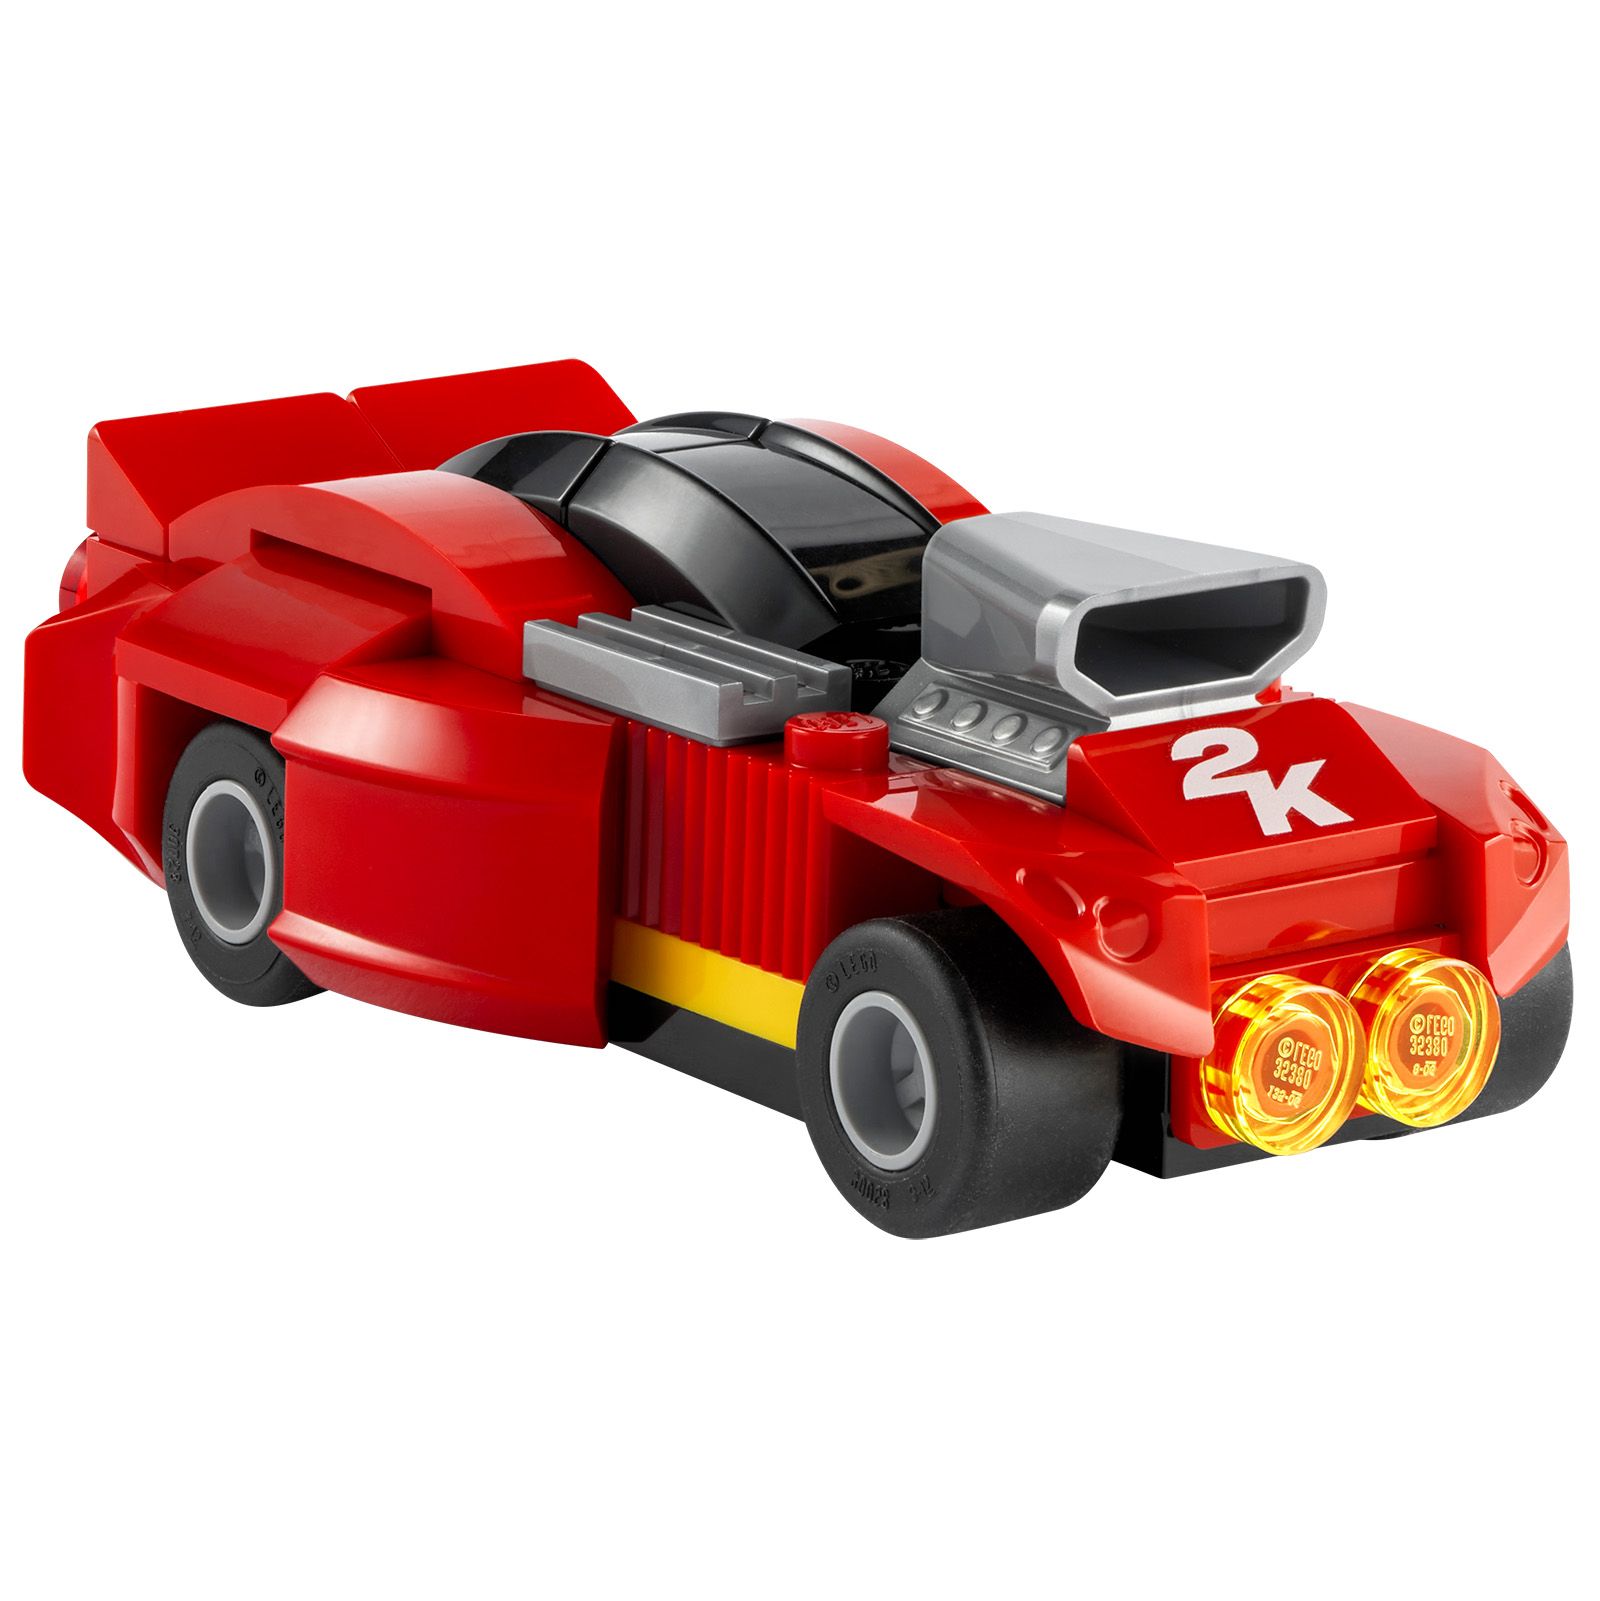 LEGO 2K Drive: napovednik in izdelek LEGO, ki je na voljo z določenimi fizičnimi različicami video igre